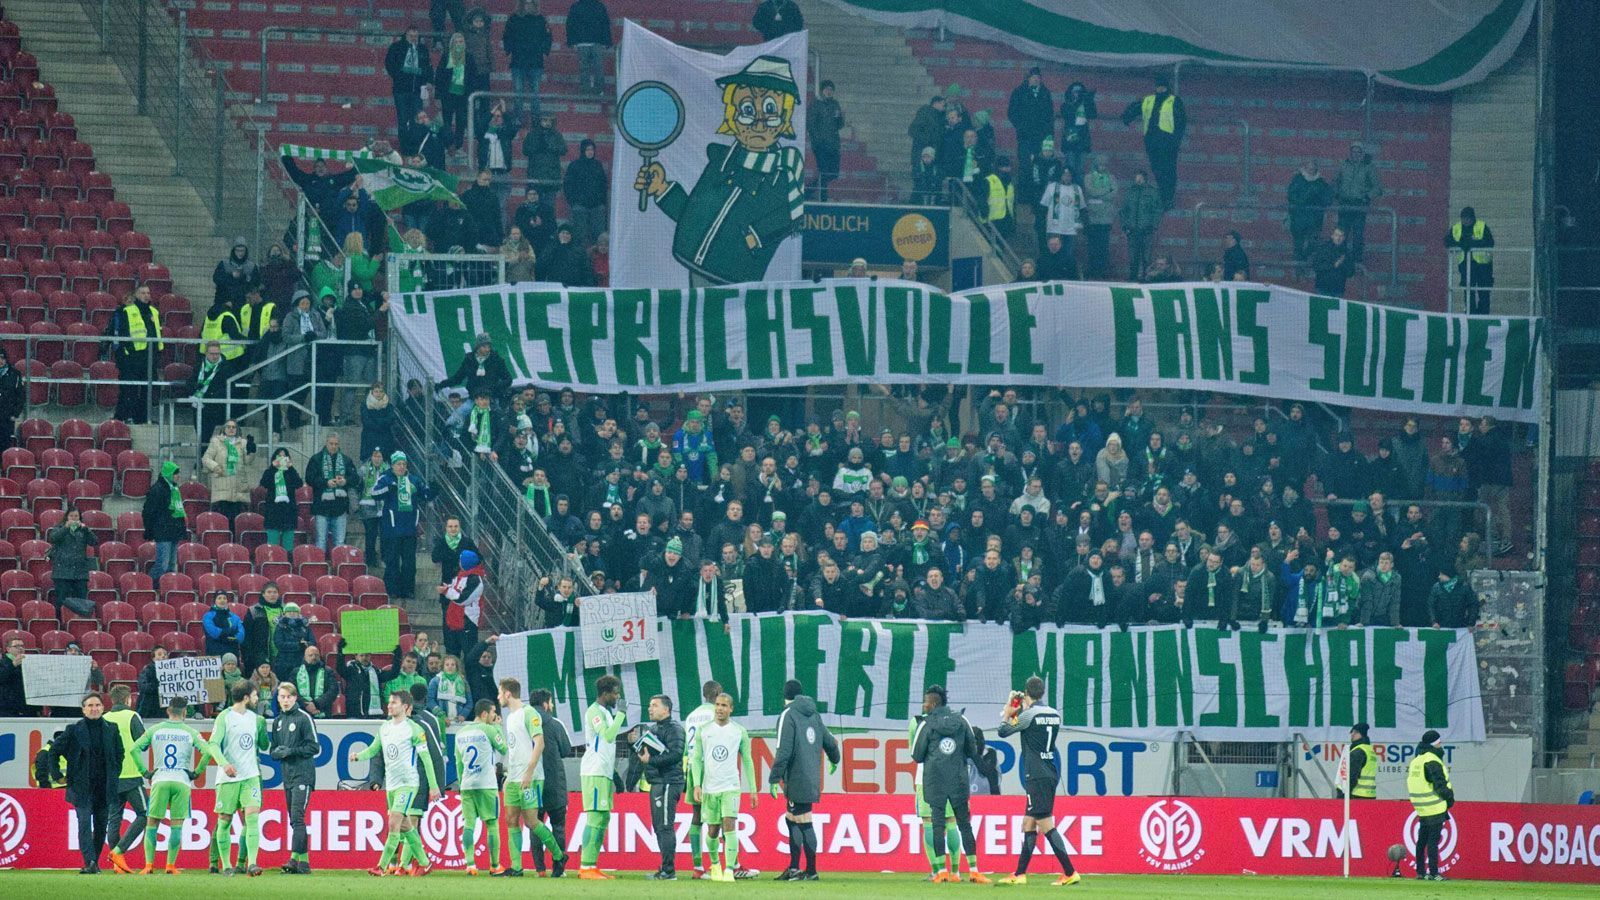 
                <strong>PLATZ 11: Fans vom VfL Wolfsburg</strong><br>
                "Anspruchsvolle Fans suchen motivierte Mannschaft." (Plakat der Fans des VfL Wolfsburg)
              